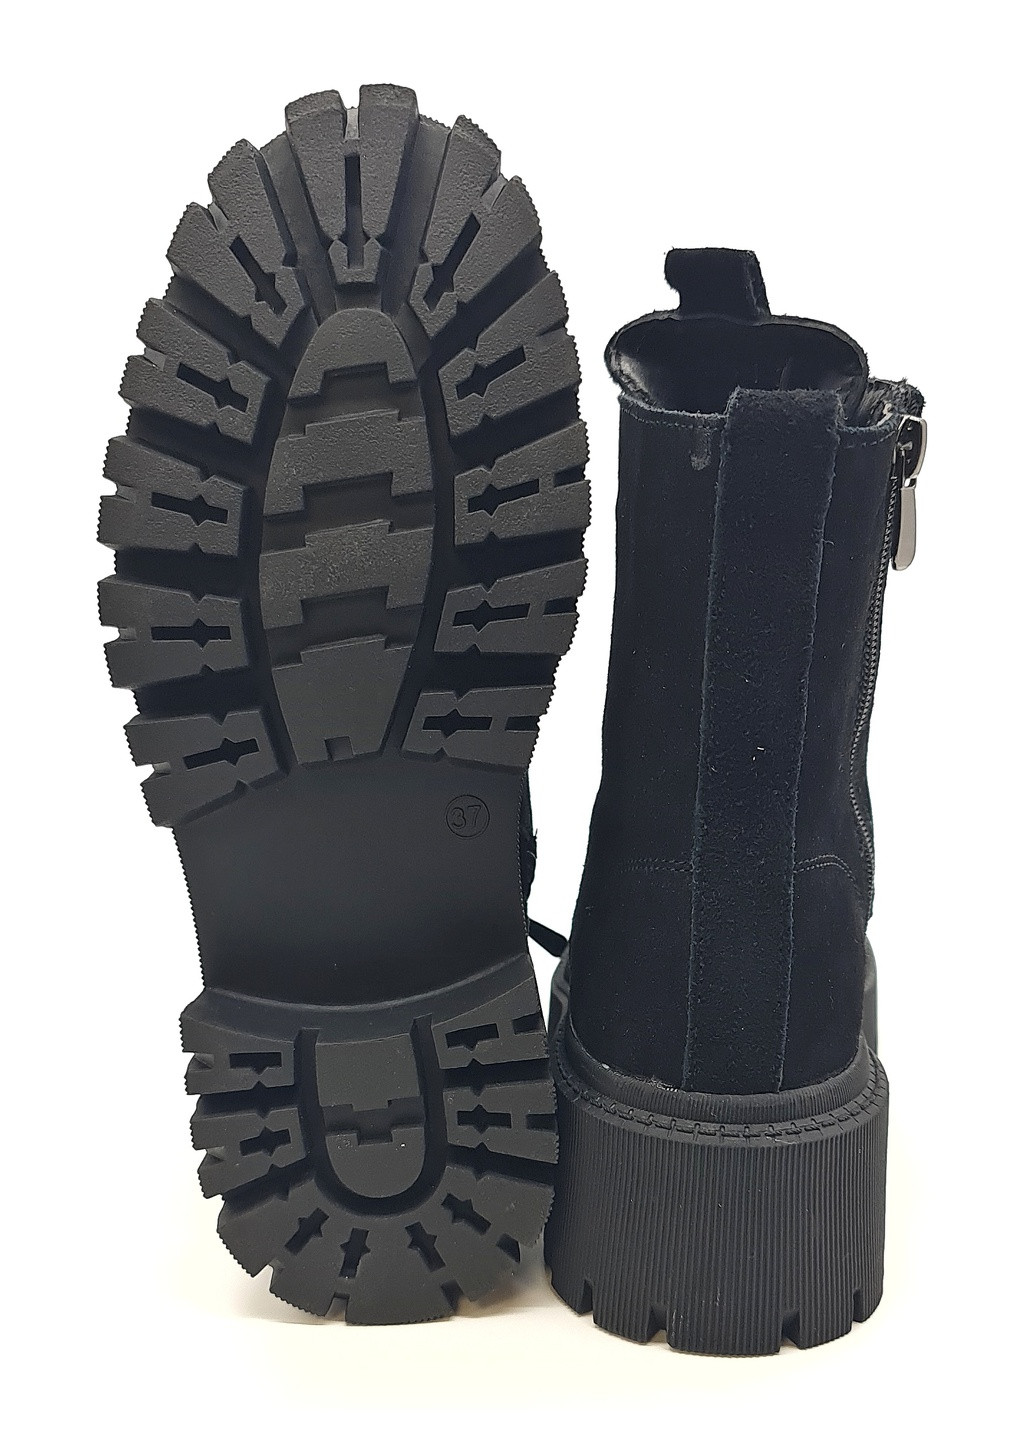 Осенние женские ботинки зимние черные замшевые ii-11-22 23 см(р) It is